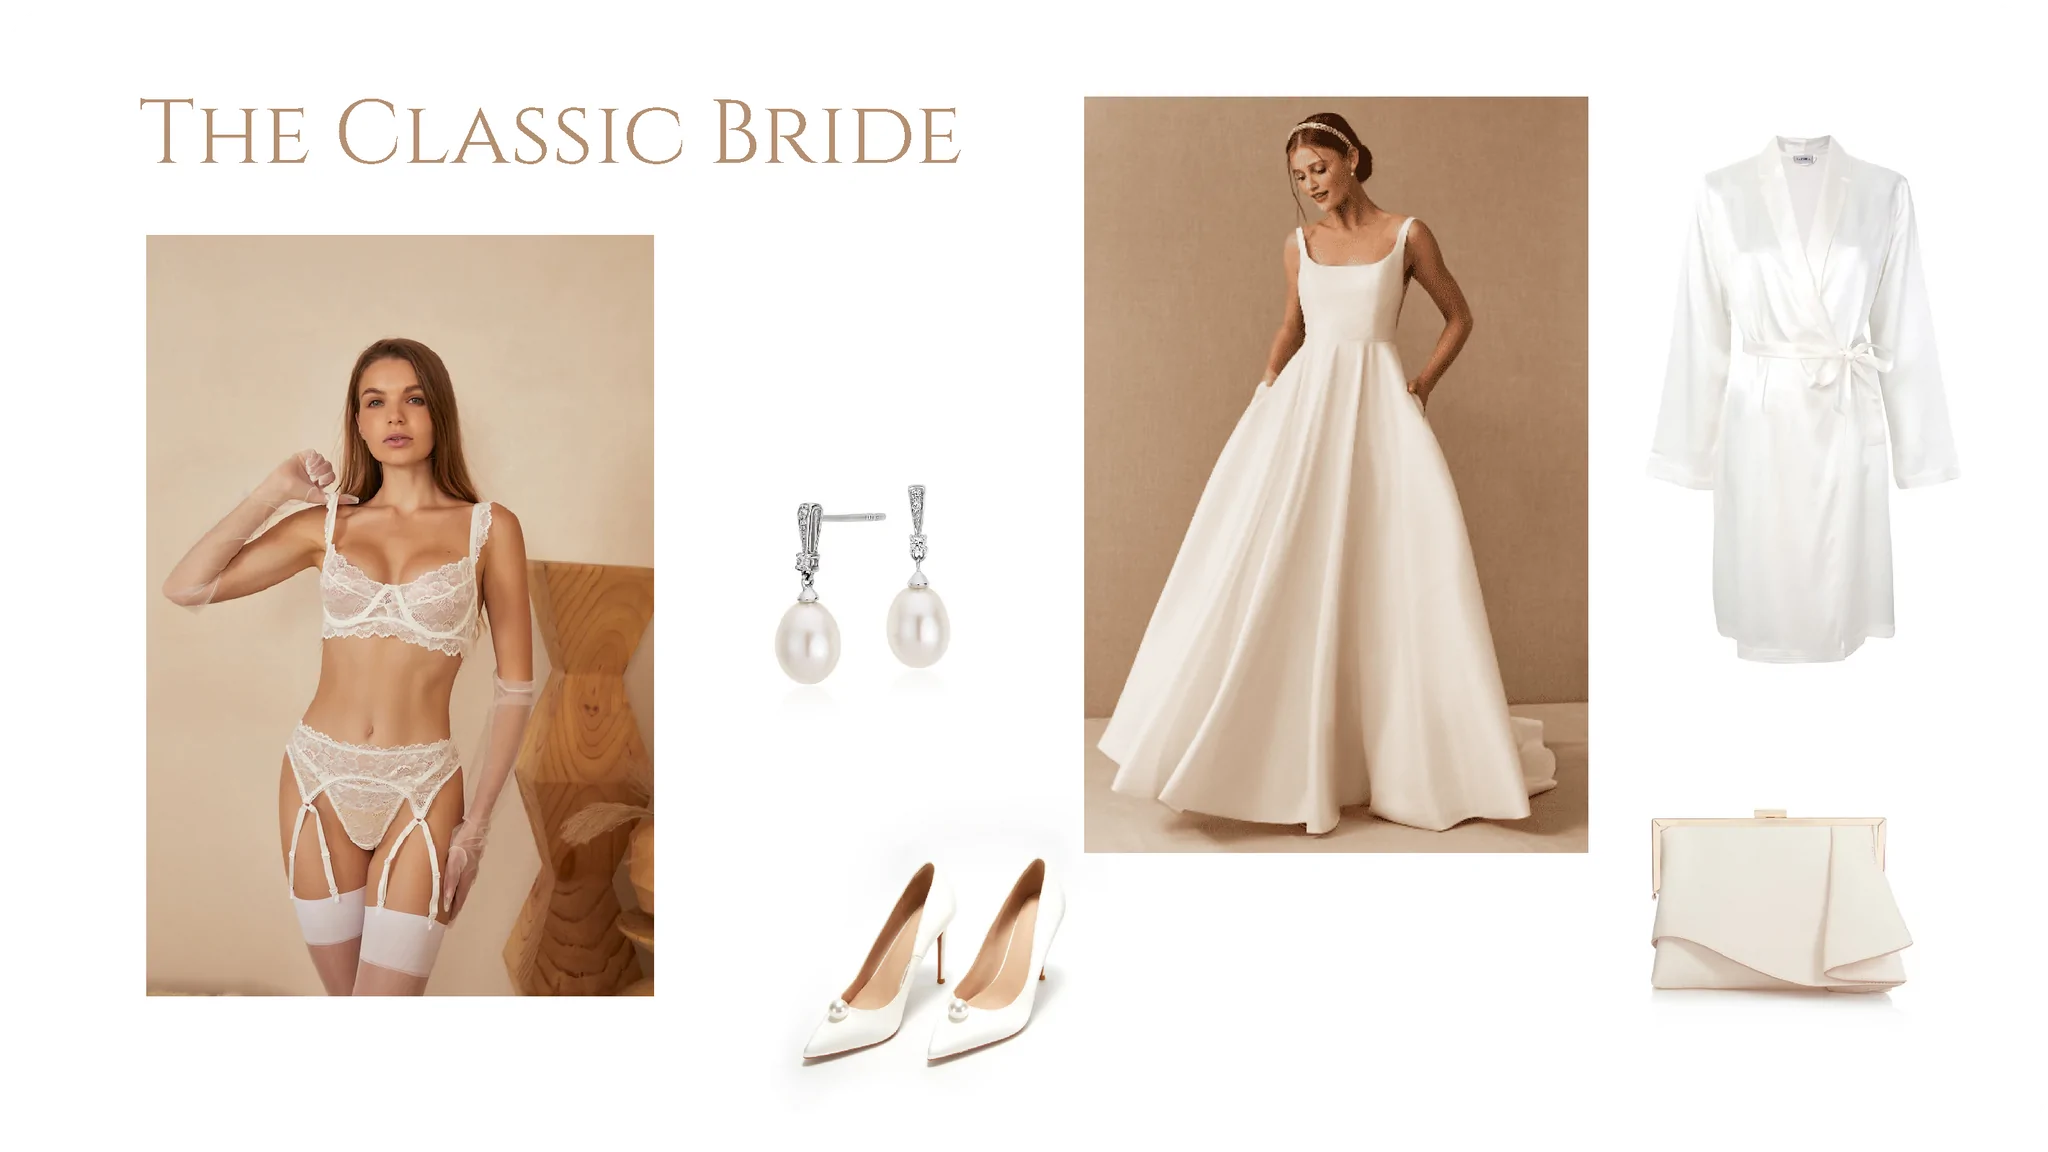 Classic bride style